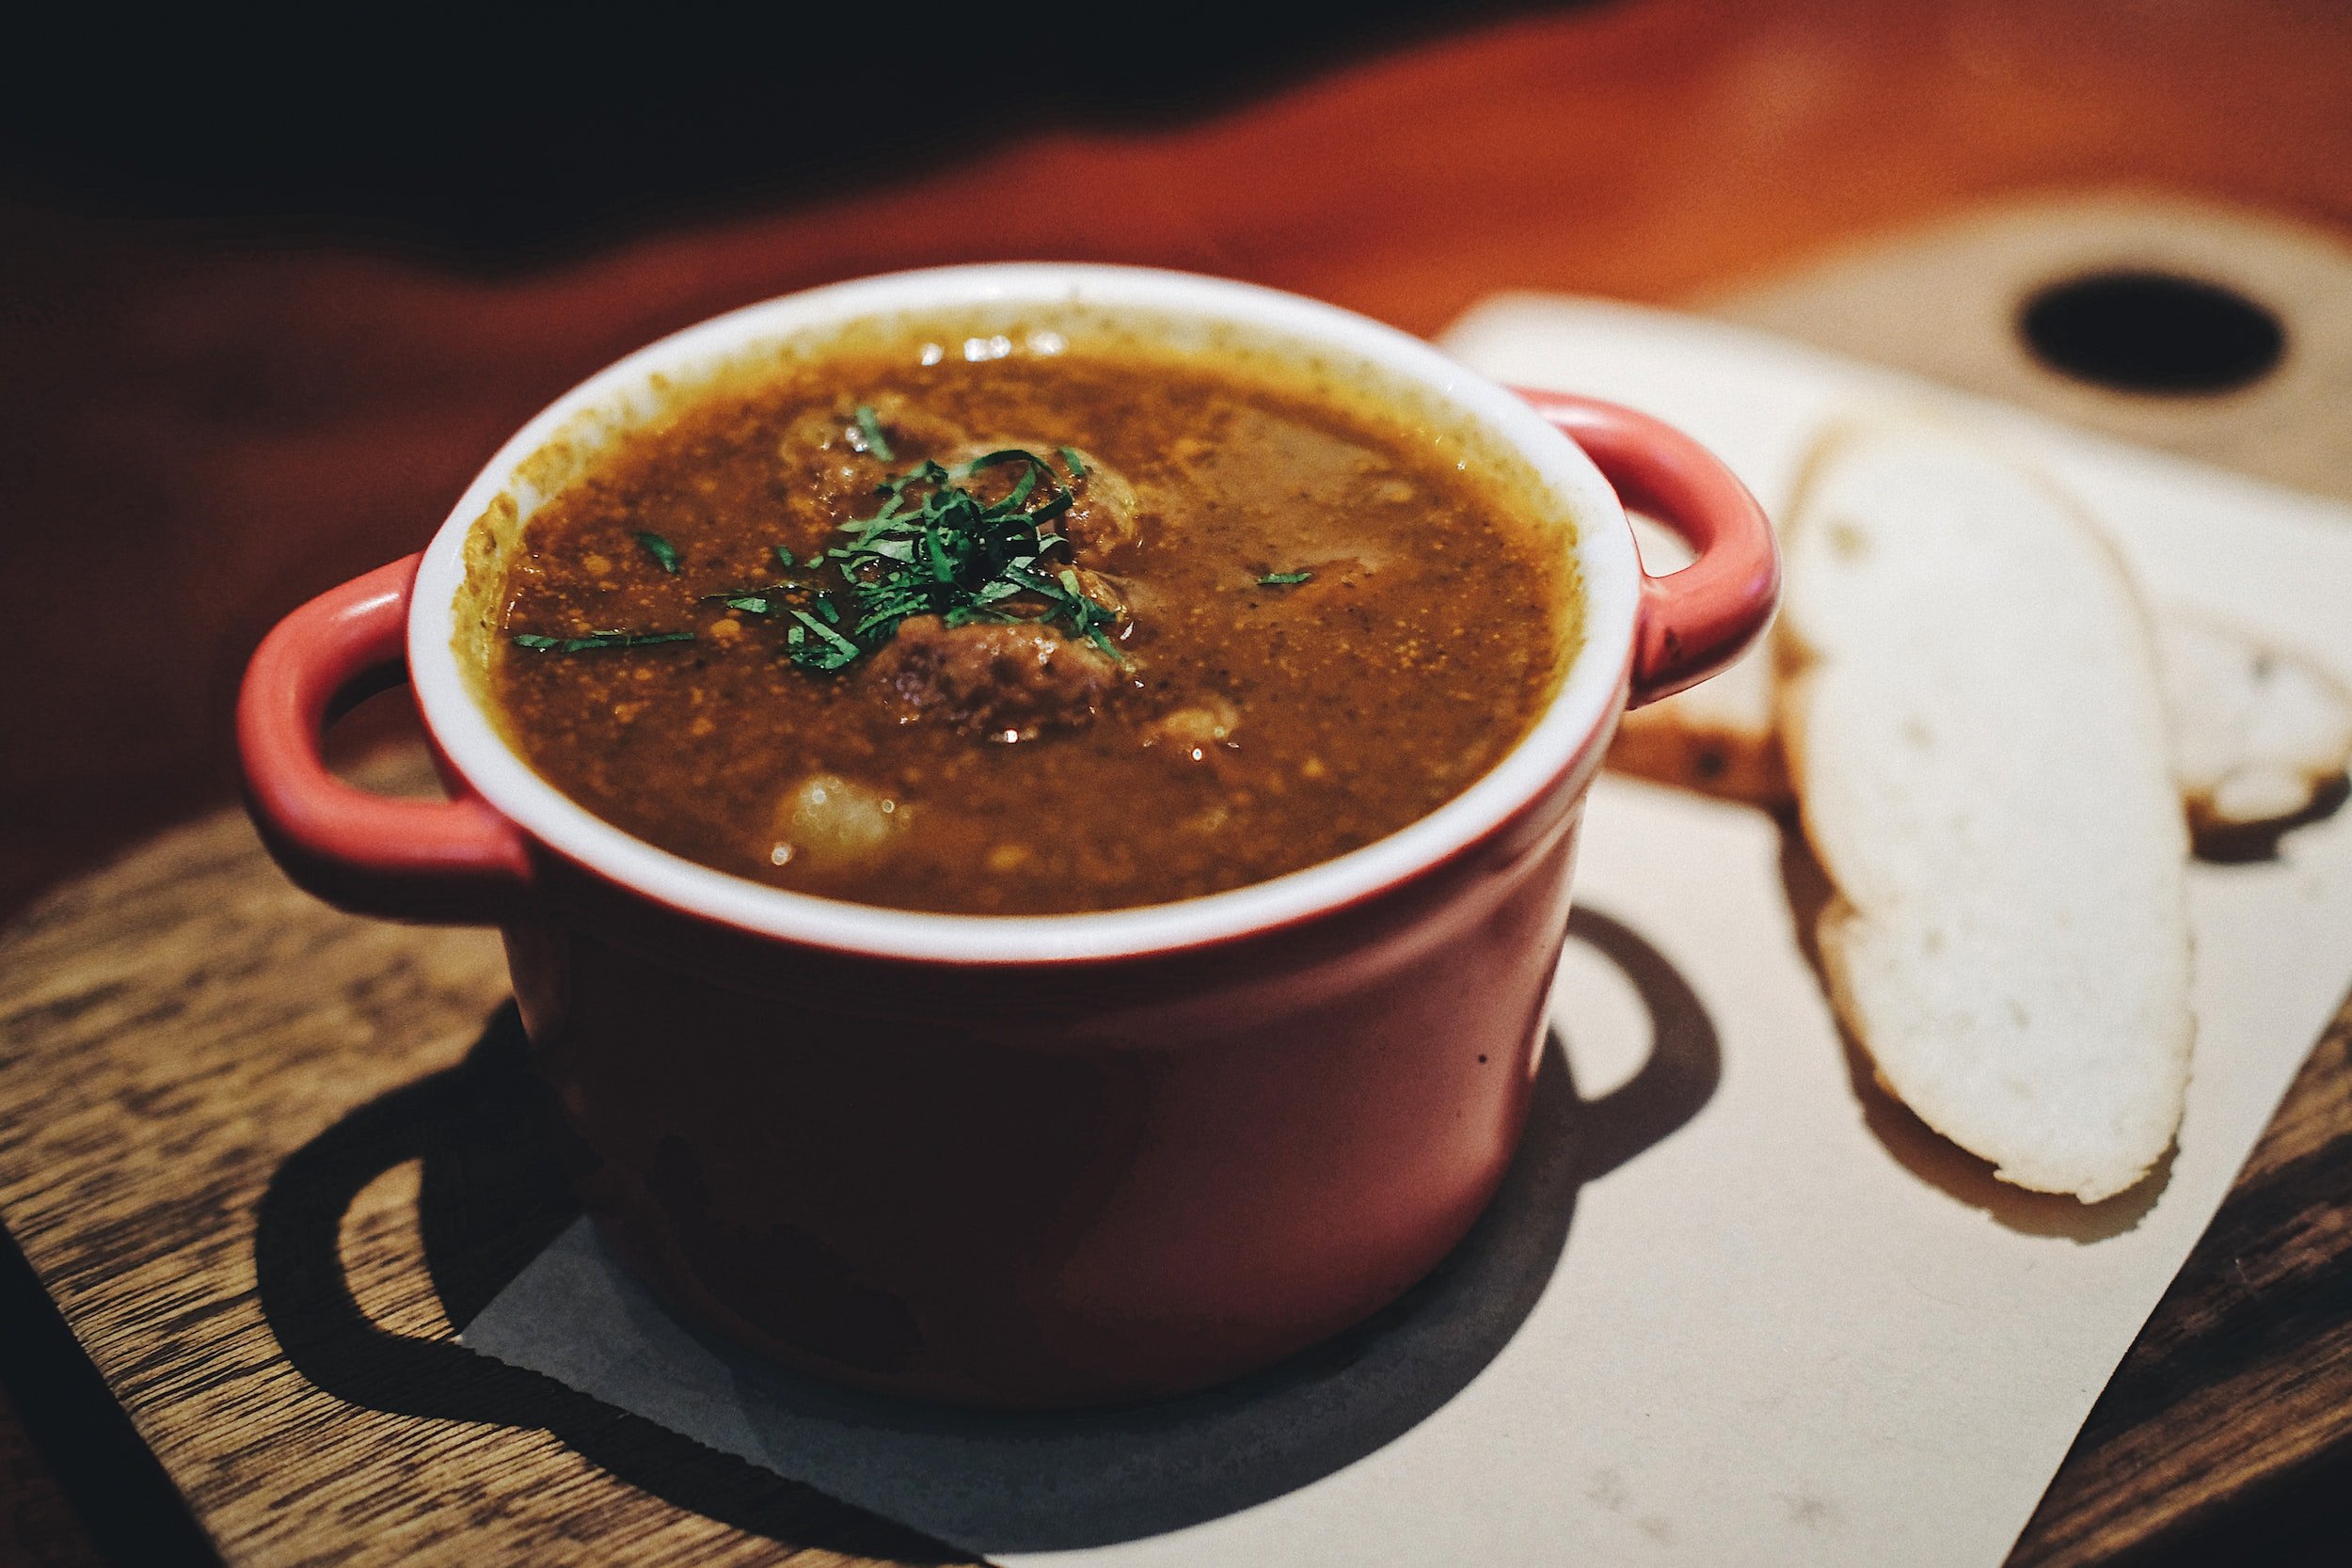 easy Merlot food pairing idea - lentil soup